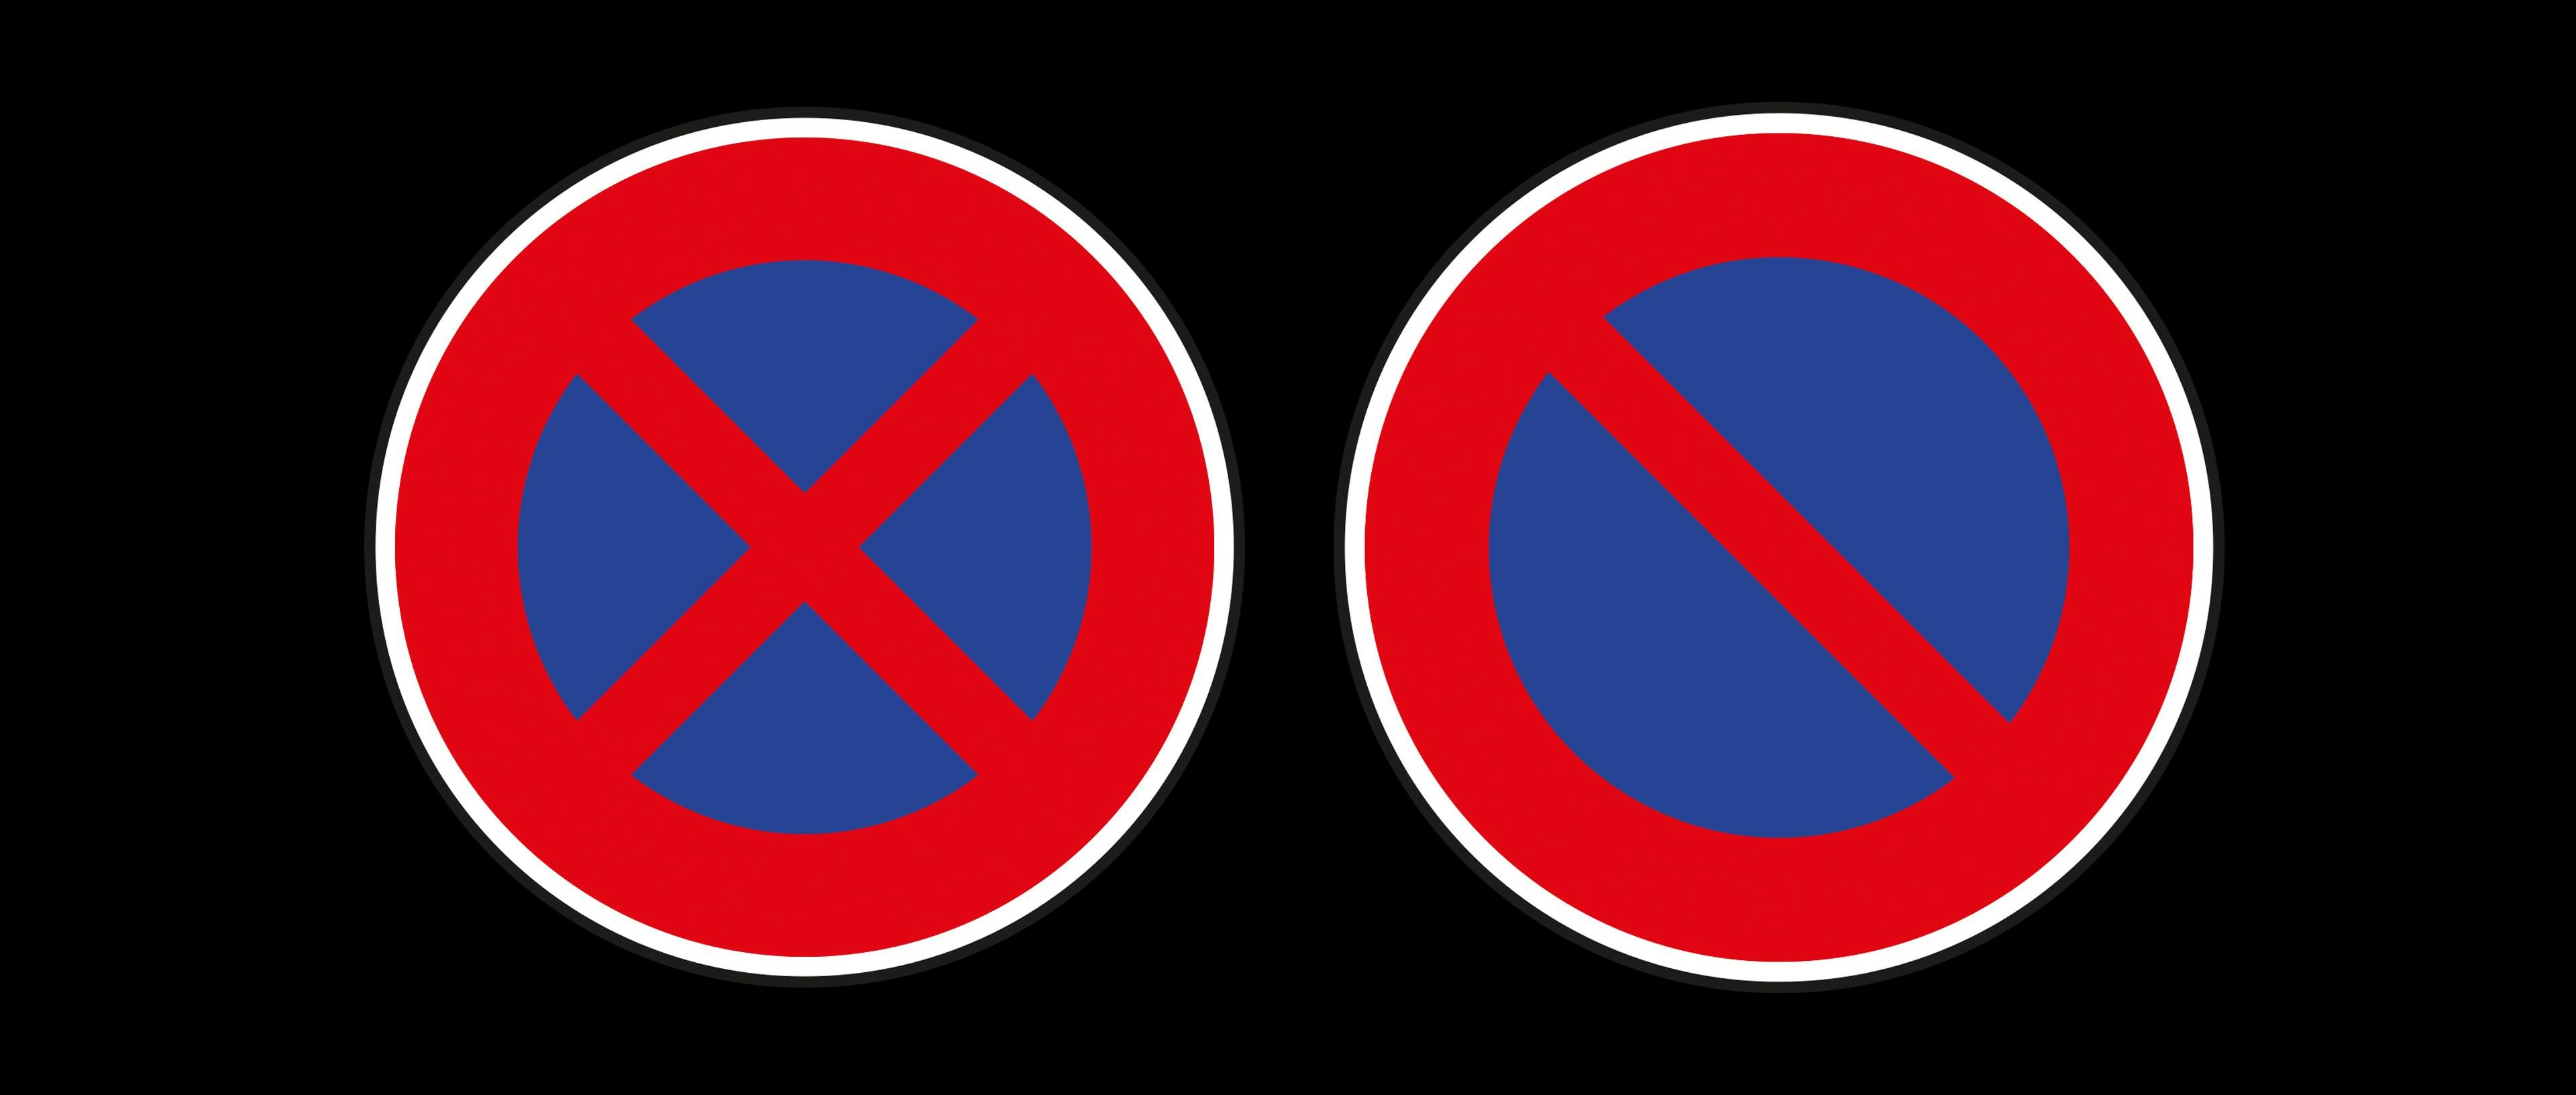 Stationnement et arrêt : règles et interdictions à connaître